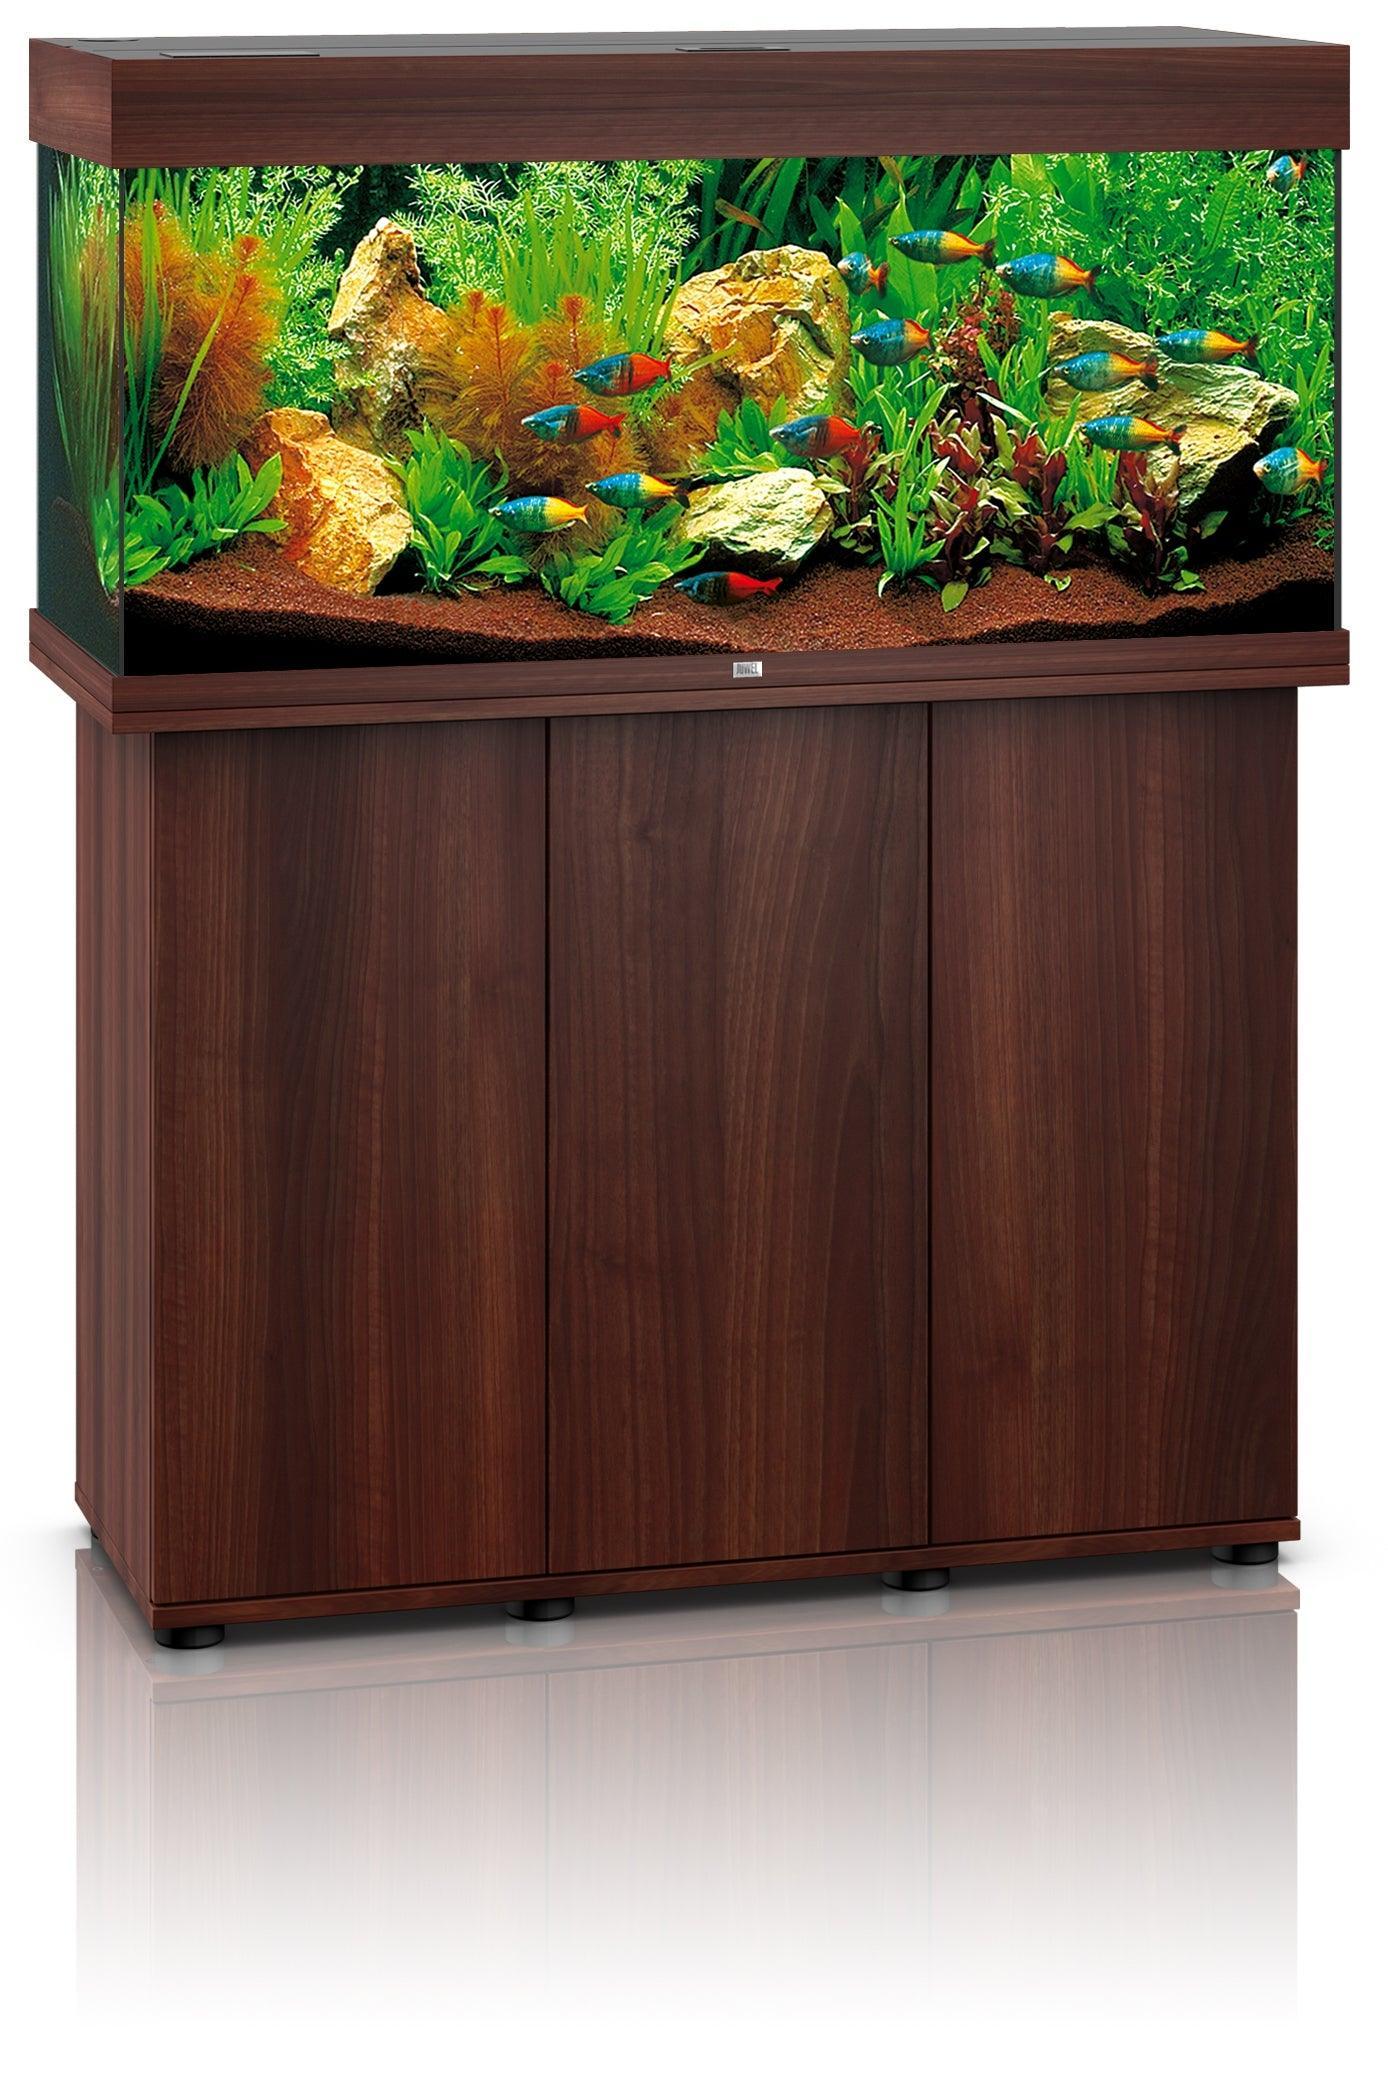 Juwel Rio 180 LED Aquarium and Cabinet - Amazing Amazon